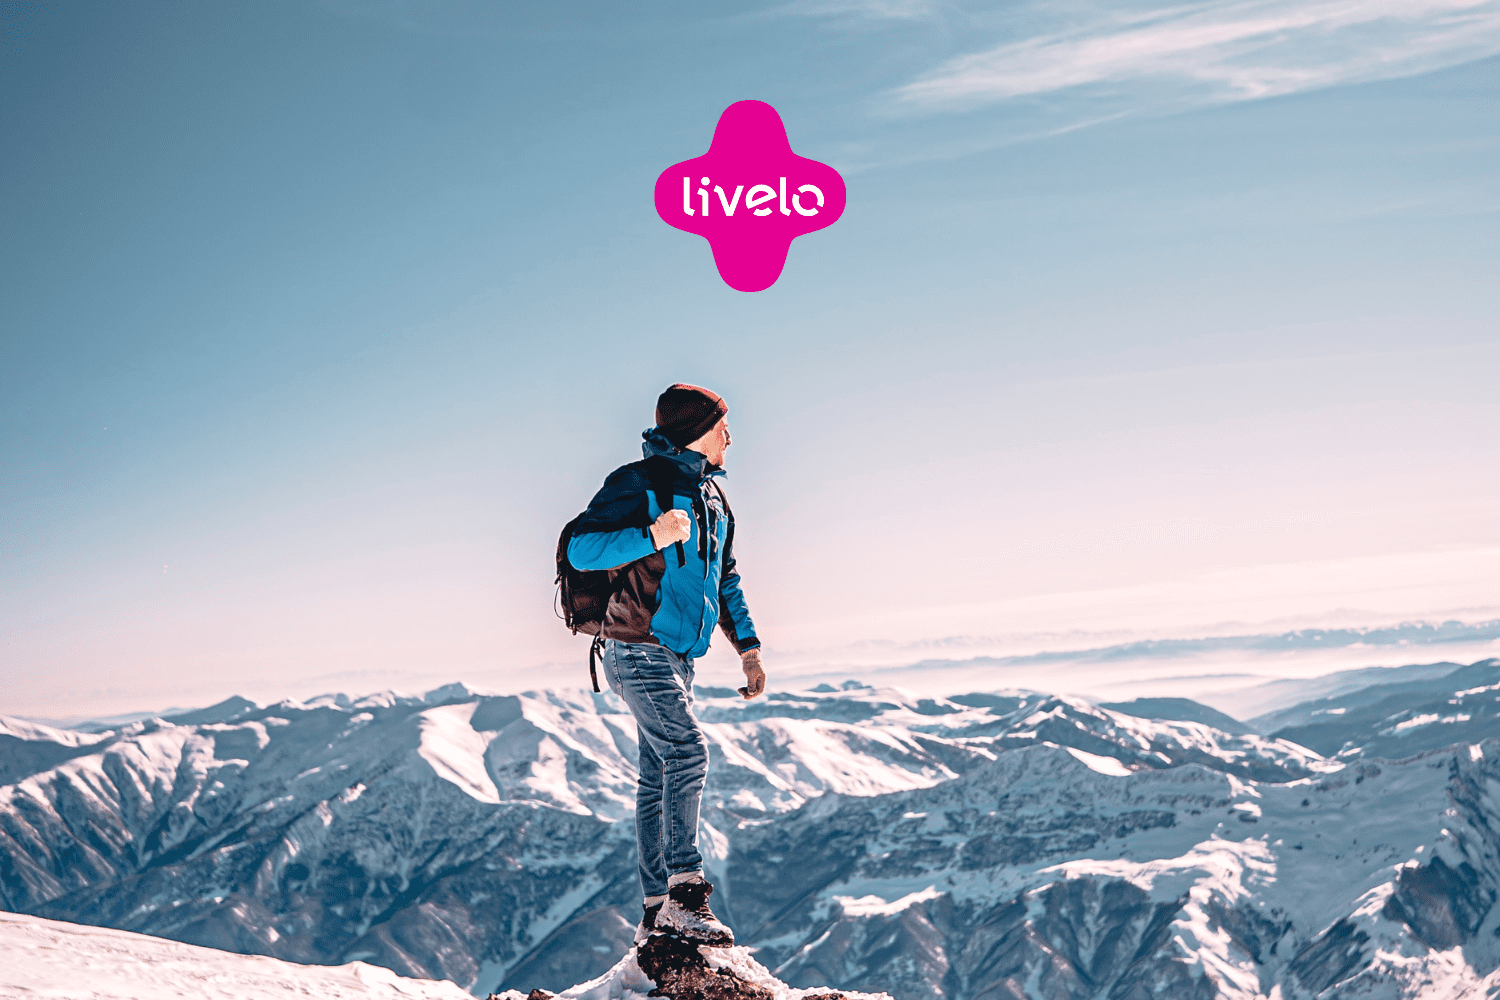 homem na neve olhando para o horizonte com logo Livelo Clube Livelo